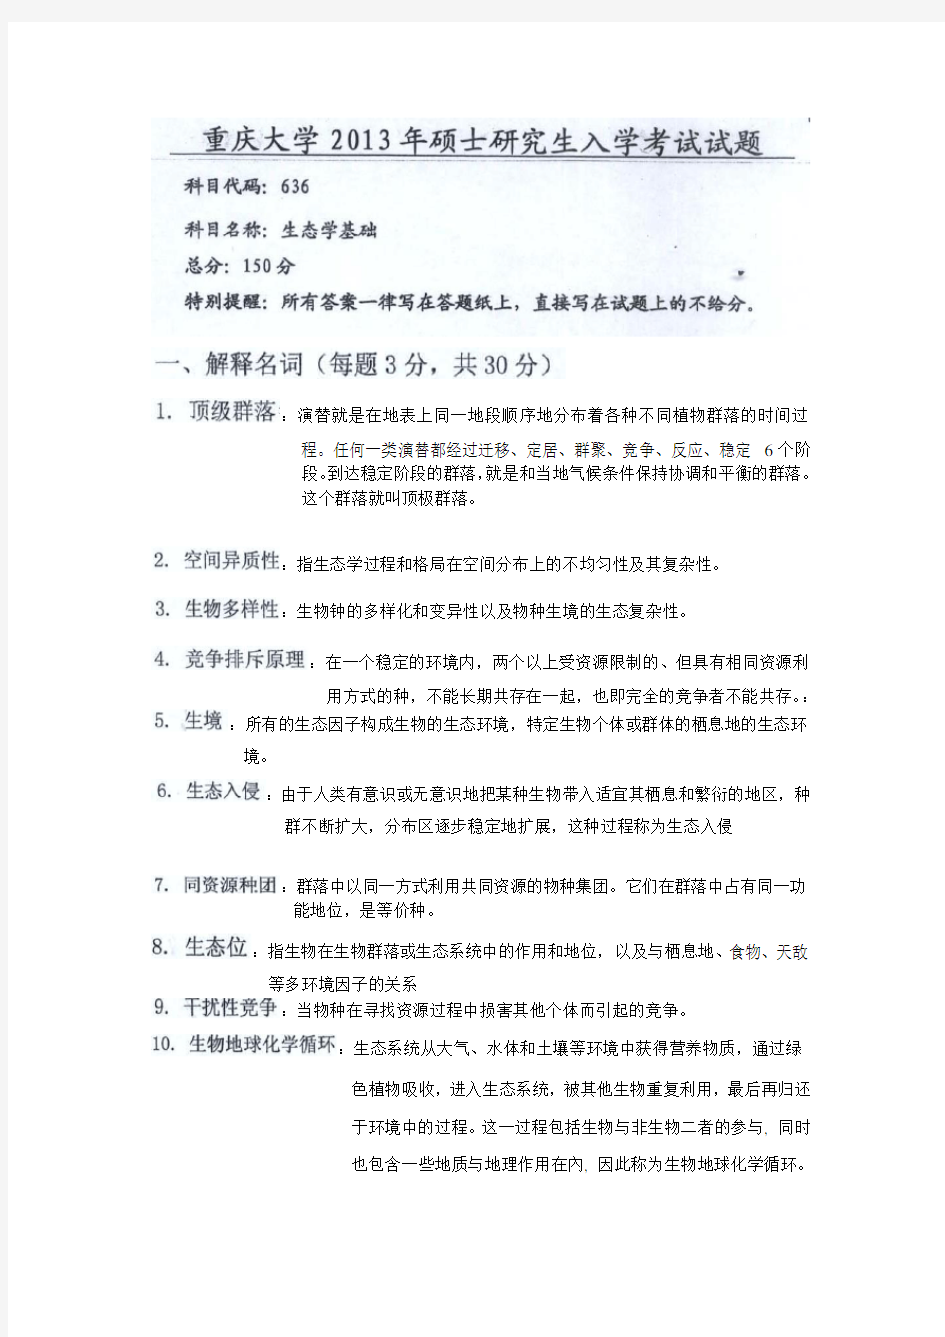 重庆大学基础生态学13年真题及答案(仅供参考)